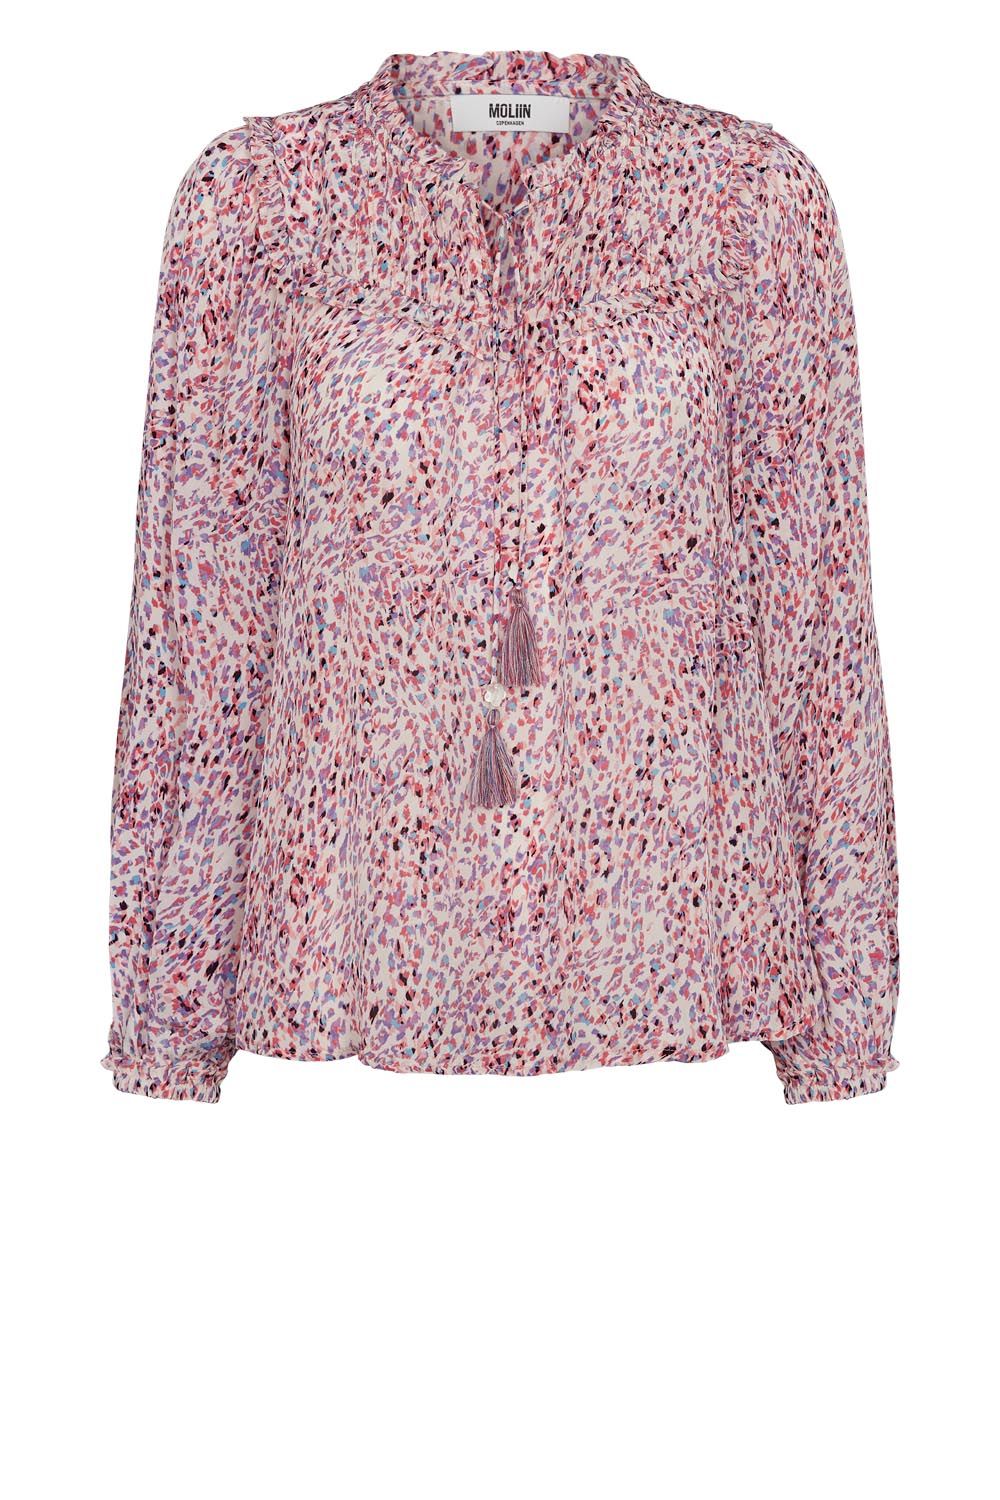 Moliin blouse   (Kelsy - ) - Hype Fashion (Schoten)